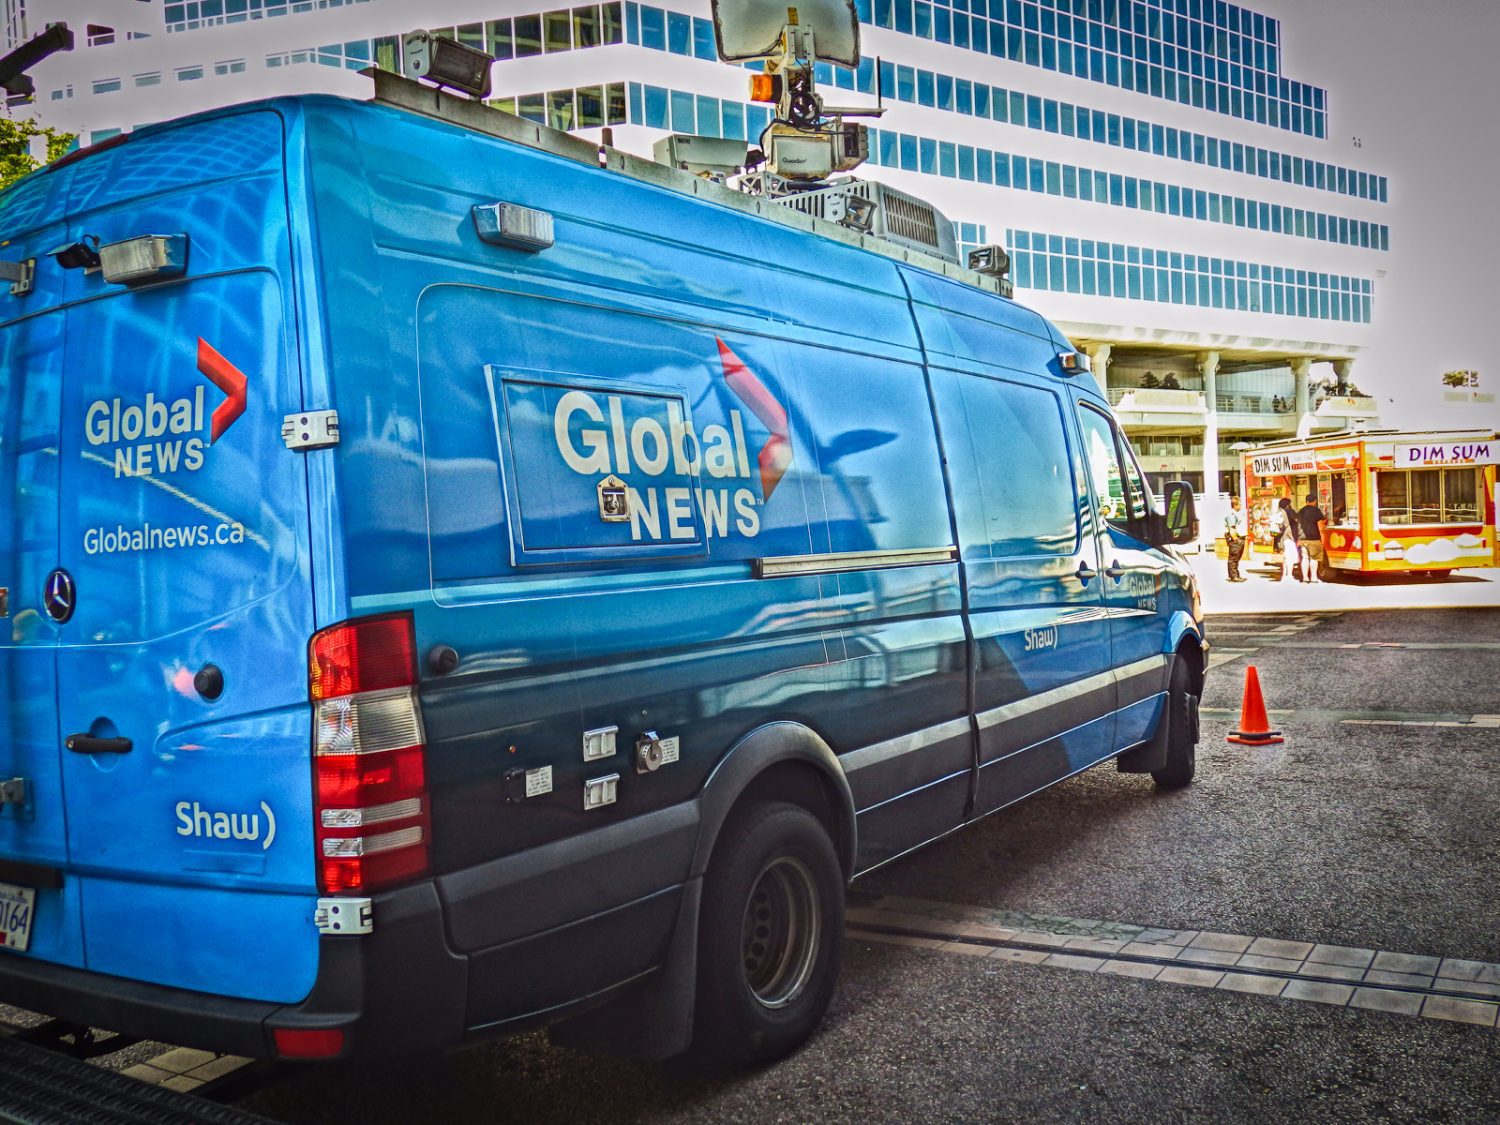 Global News van